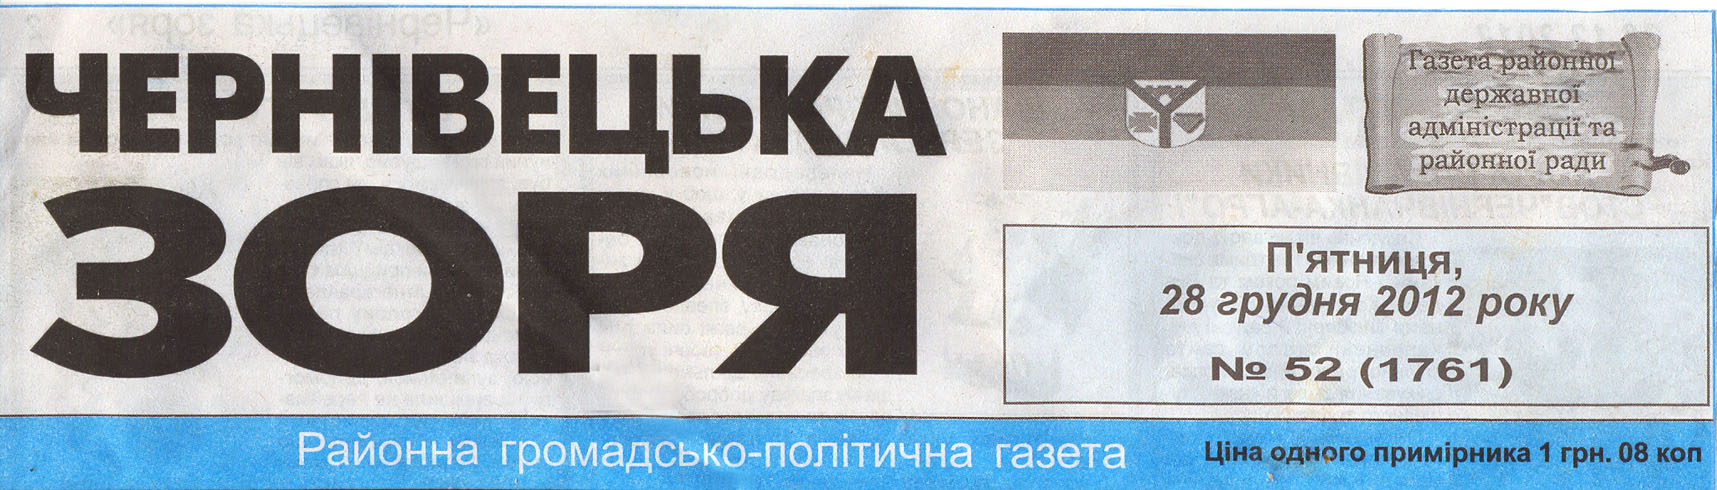 Районна громадсько-політична газета